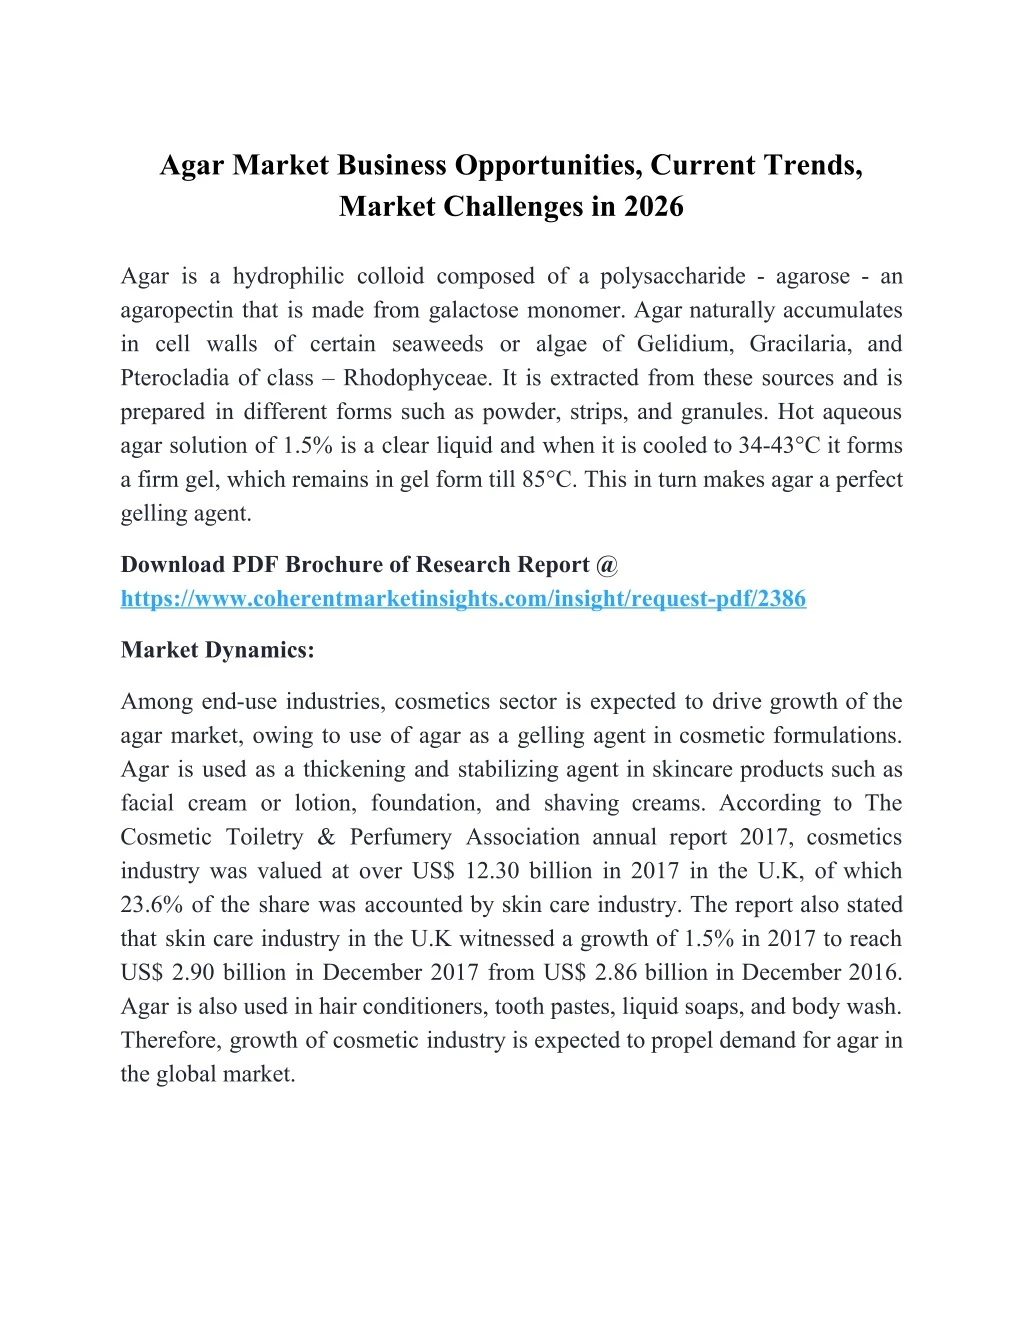 agar market business opportunities current trends